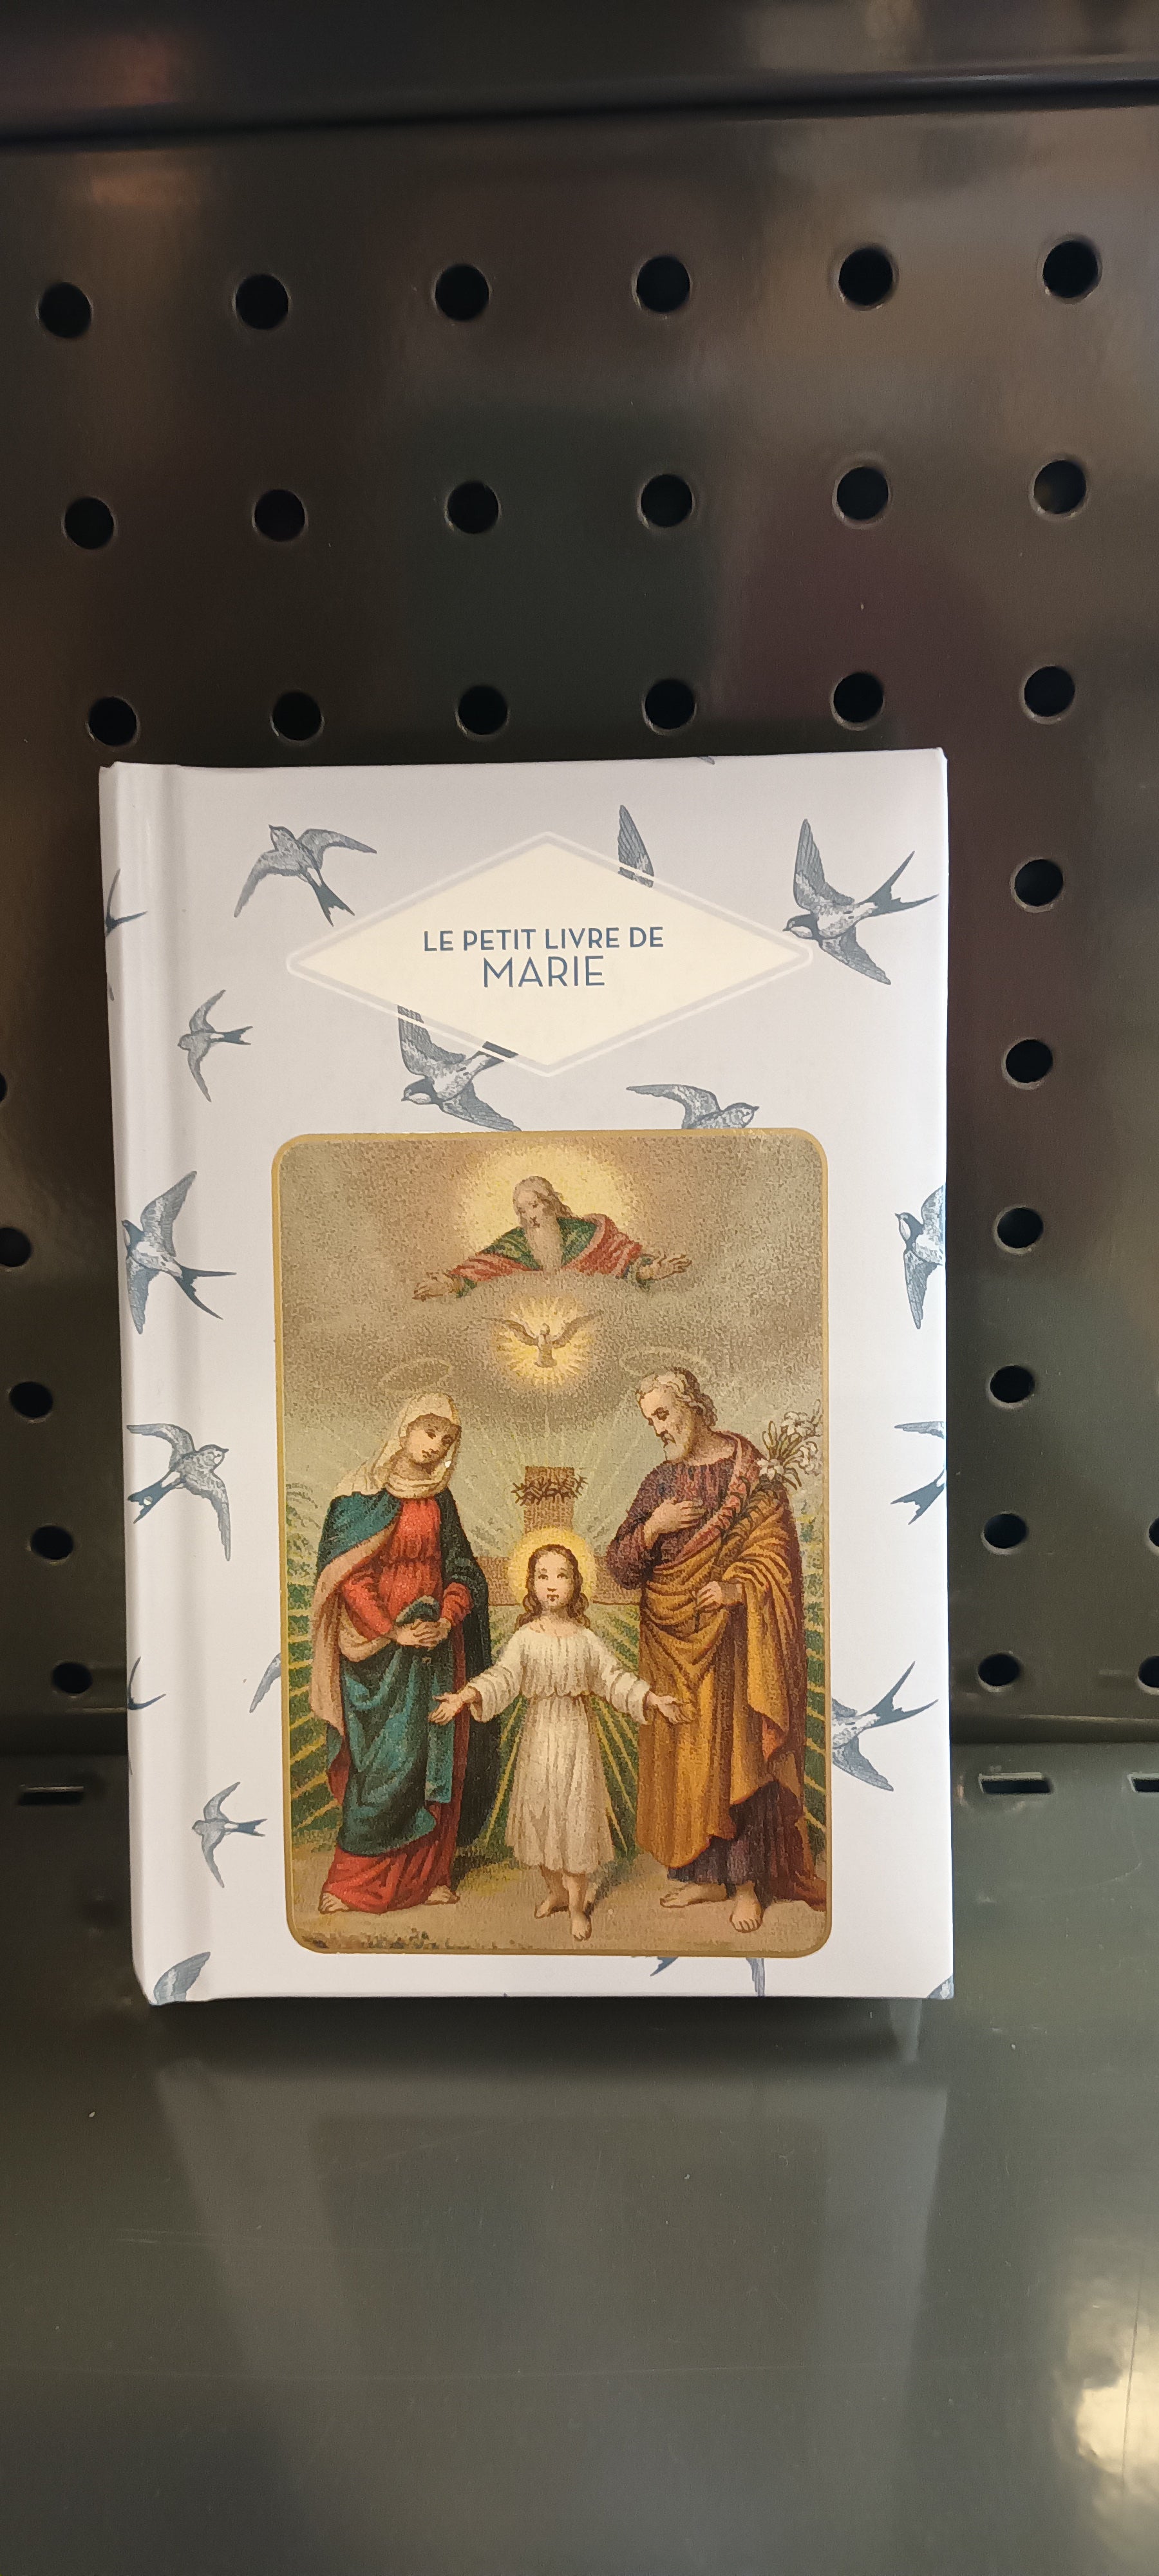 Le petit livre de Marie